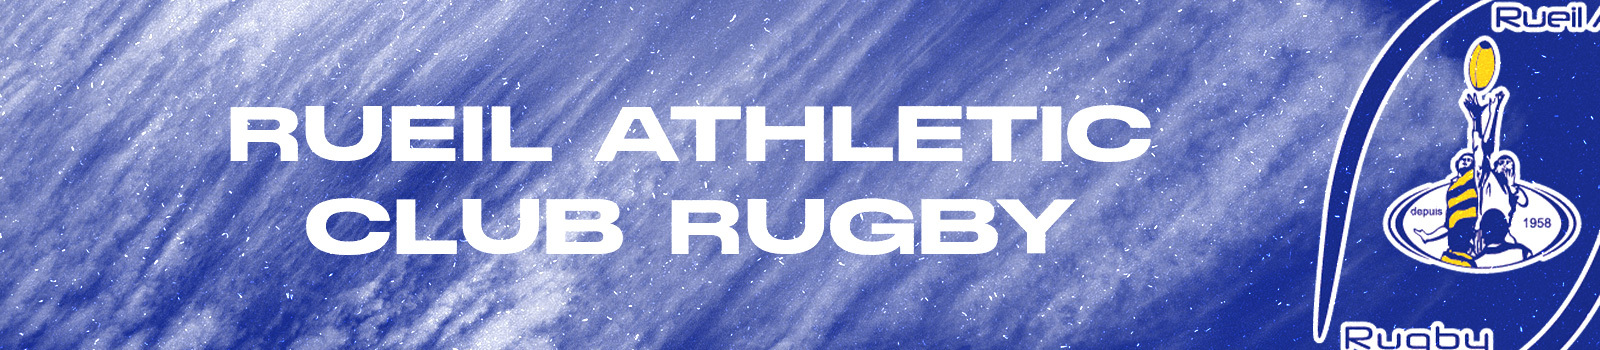 Rueil Athletic Club Rugby